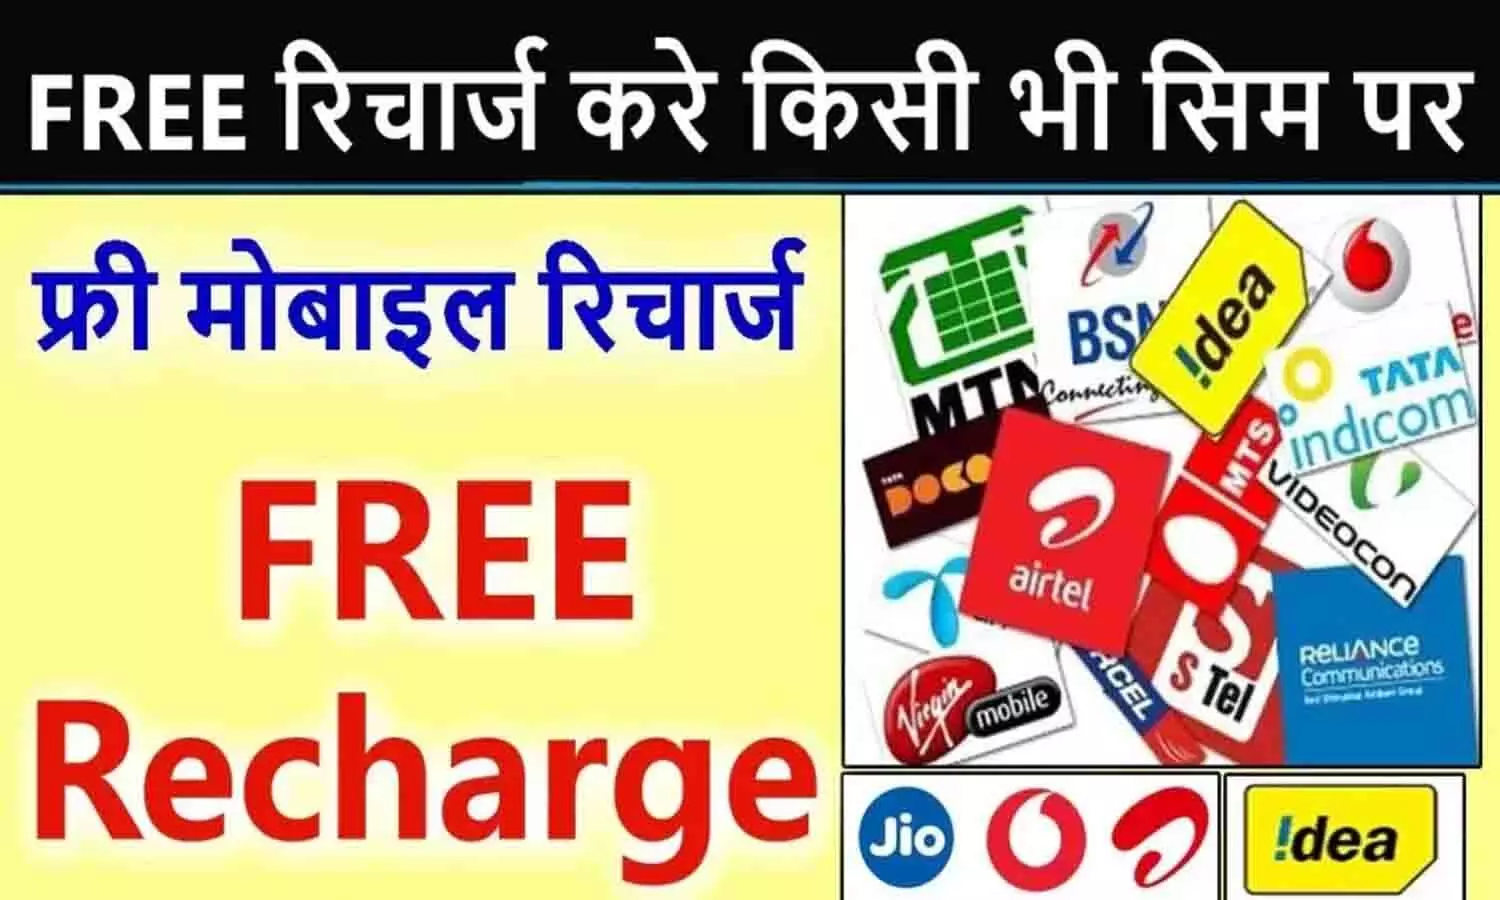 Bazartak Free Recharge: बड़ा ऐलान! Jio, Airtel, Vi और BSNL के ग्राहकों को मिलेगा मुफ्त मोबाइल रिचार्ज? फटाफट उठाएं फायदा...